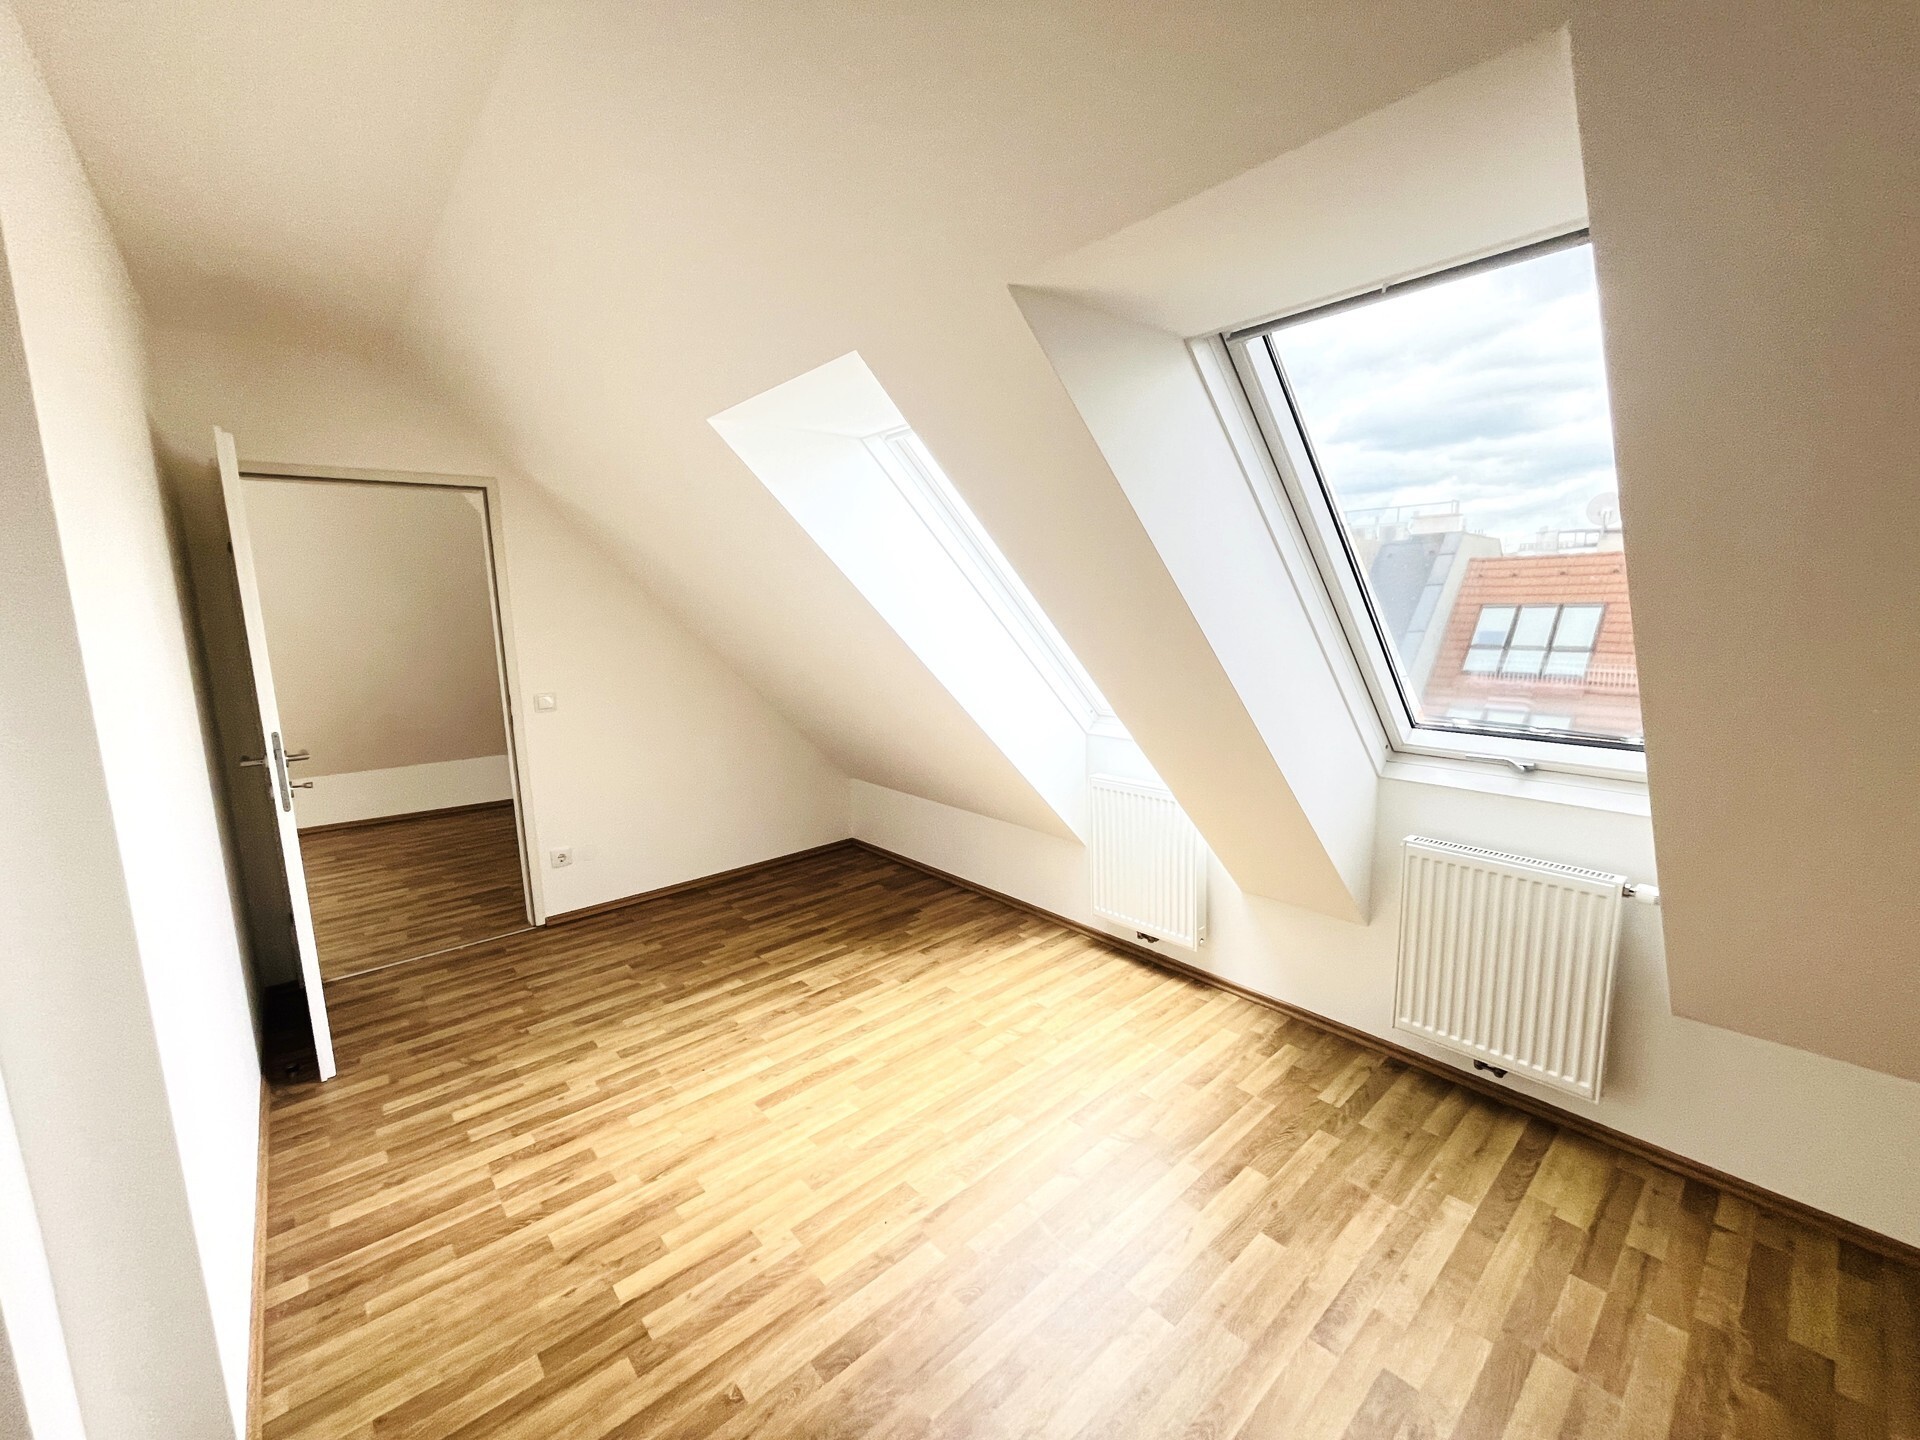 Zentrale 2-Zimmer-Dachgeschoßwohnung mit Terrasse und Einbauküche - zu kaufen in 1150 Wien